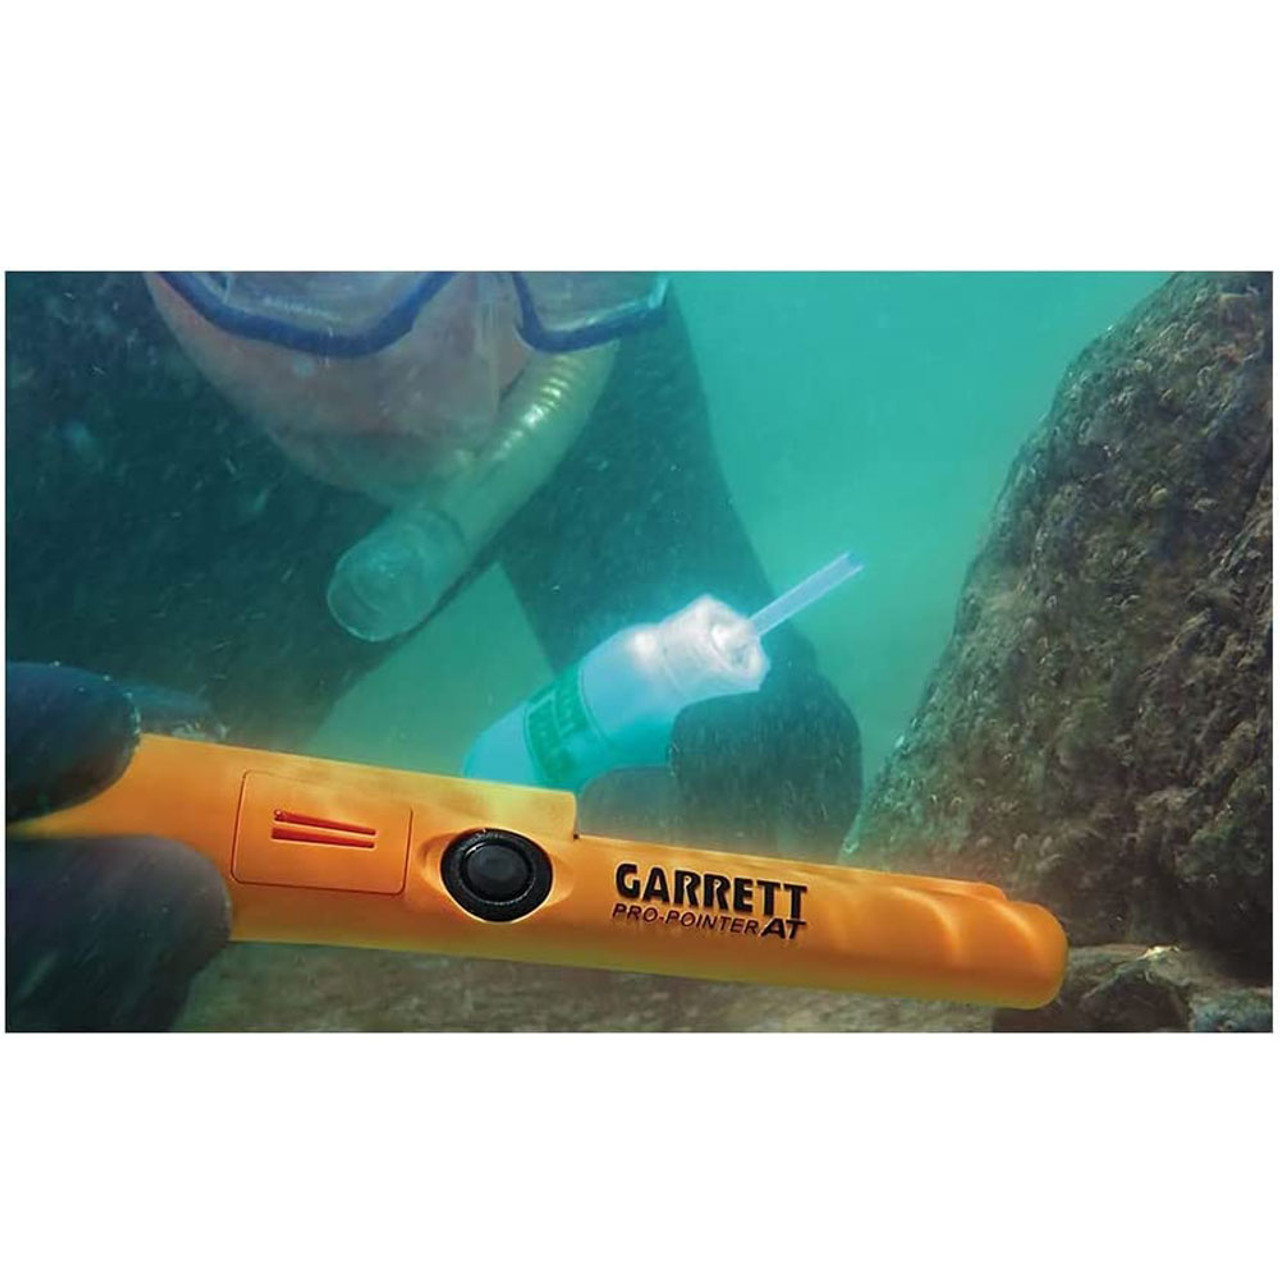 GARRETT Pro Pointer AT Metal Detector 1140900-1612900